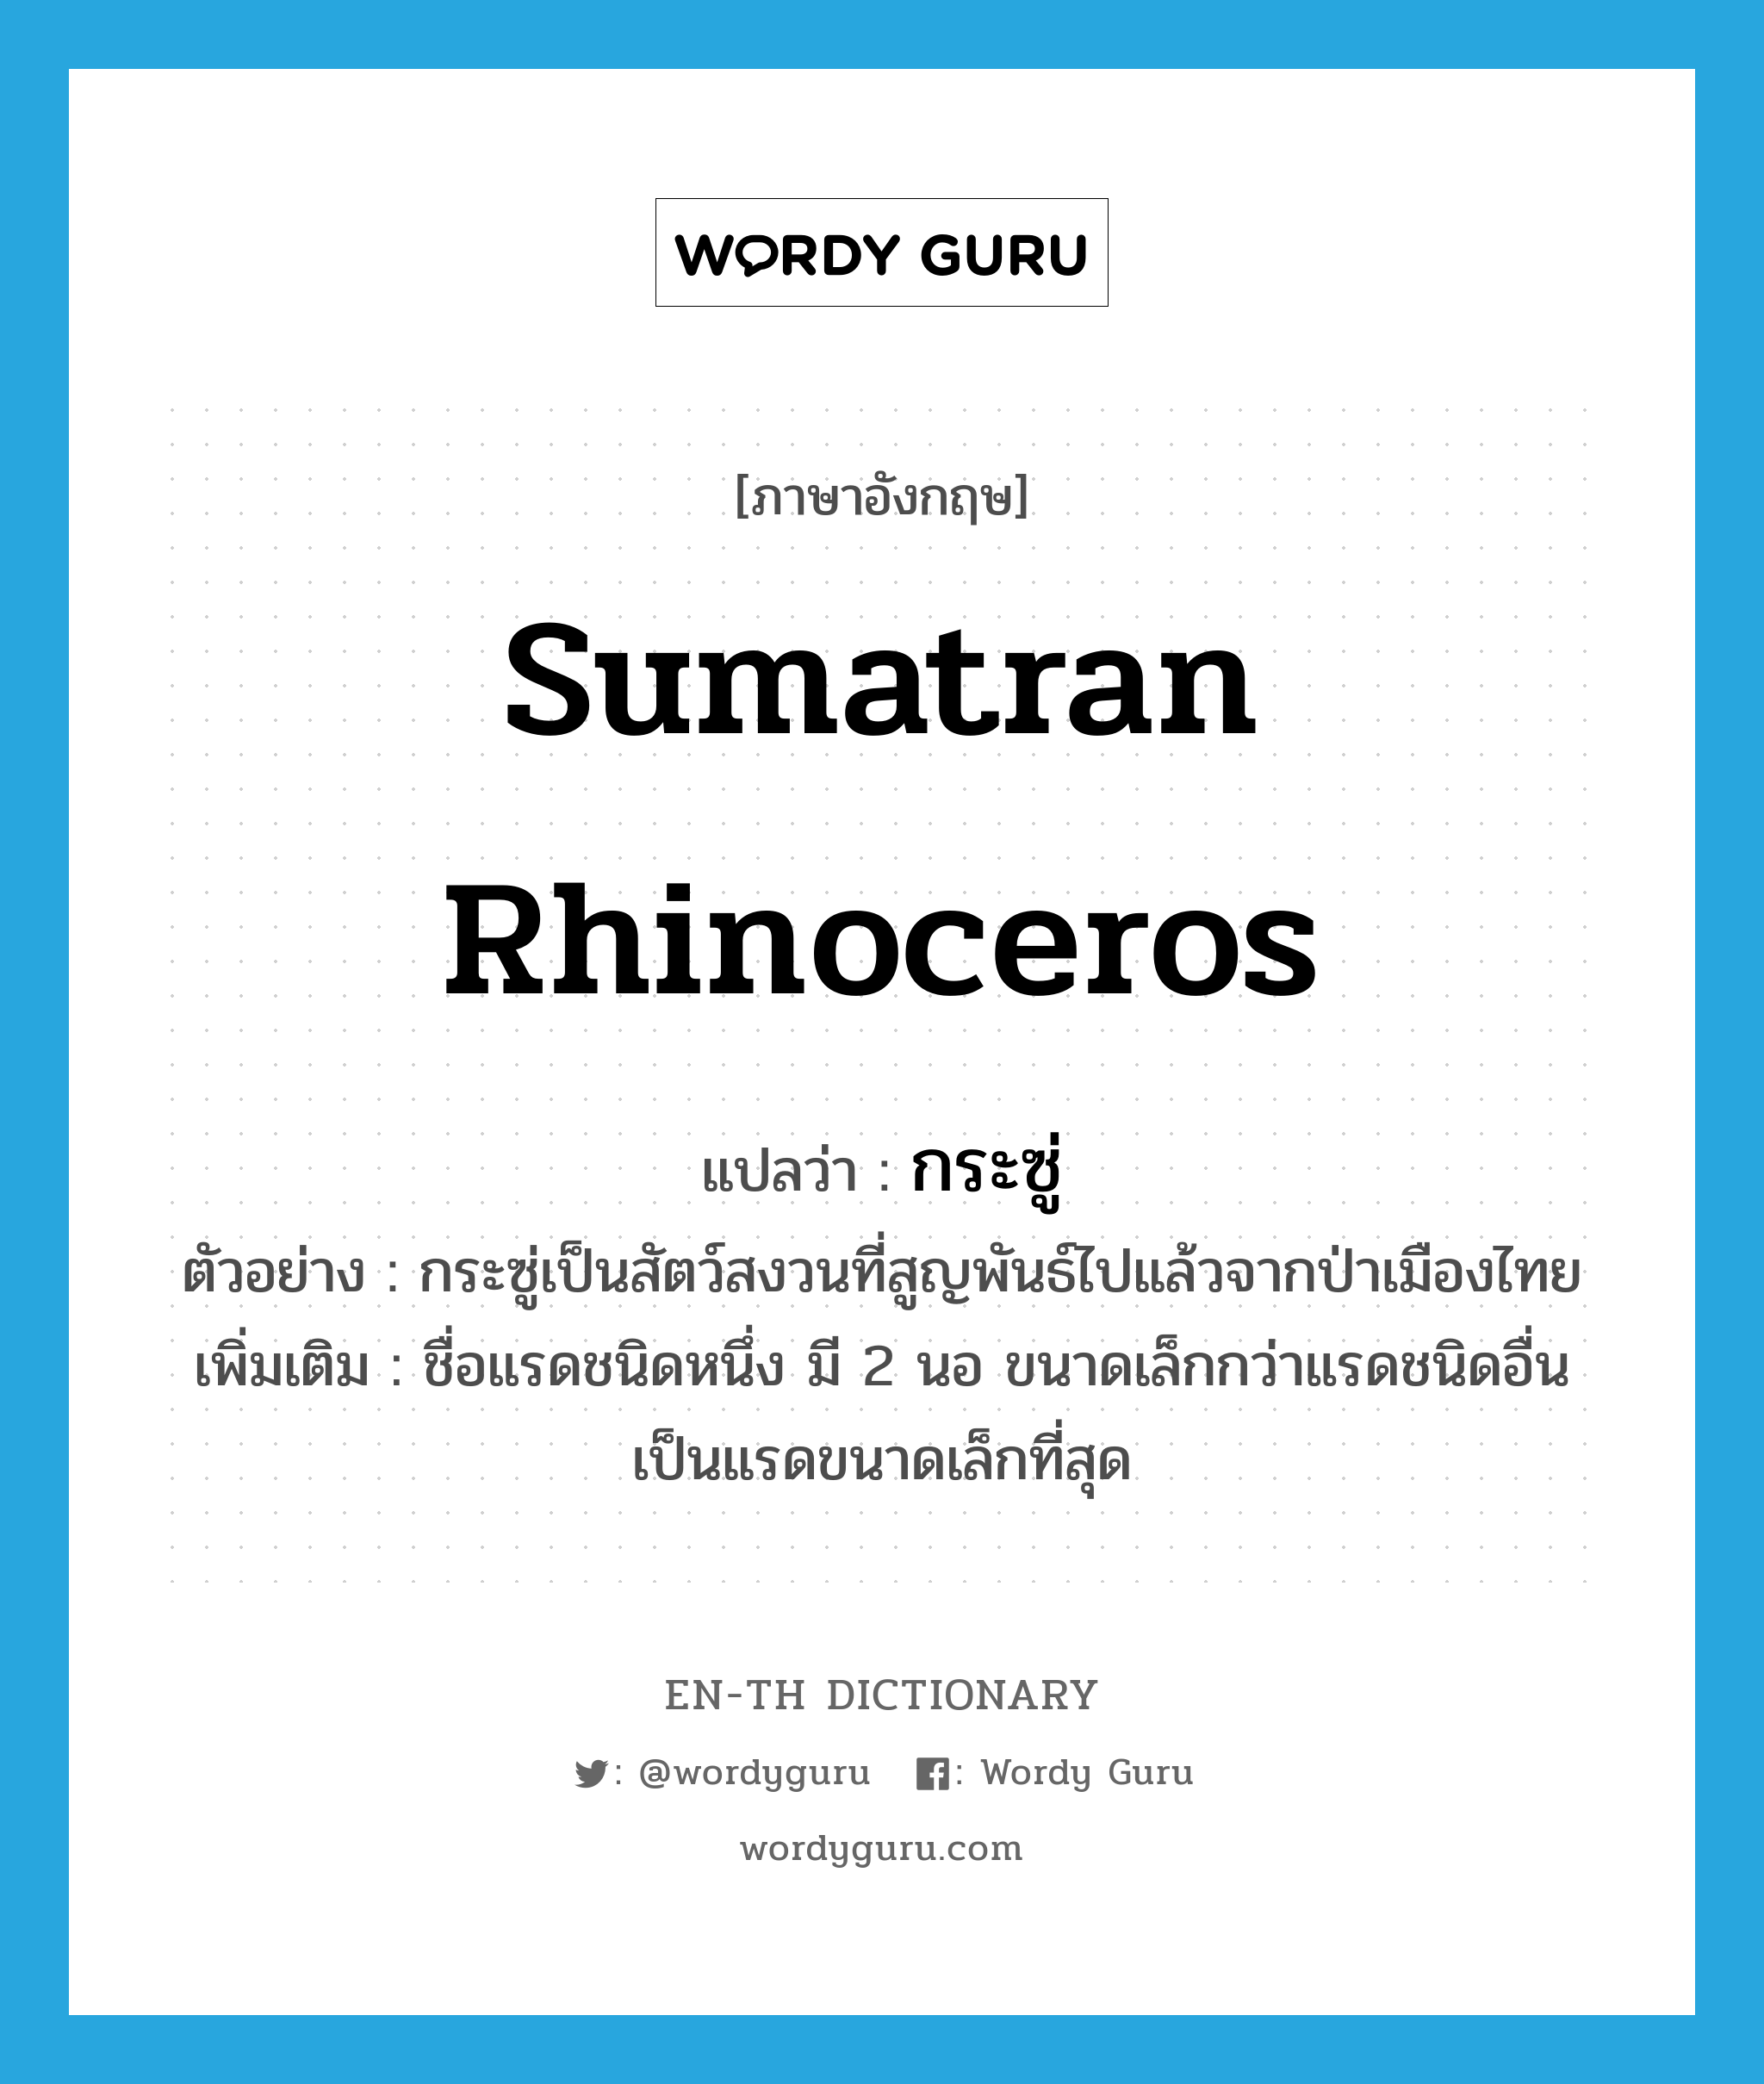 Sumatran rhinoceros แปลว่า?, คำศัพท์ภาษาอังกฤษ Sumatran rhinoceros แปลว่า กระซู่ ประเภท N ตัวอย่าง กระซู่เป็นสัตว์สงวนที่สูญพันธ์ไปแล้วจากป่าเมืองไทย เพิ่มเติม ชื่อแรดชนิดหนึ่ง มี 2 นอ ขนาดเล็กกว่าแรดชนิดอื่น เป็นแรดขนาดเล็กที่สุด หมวด N